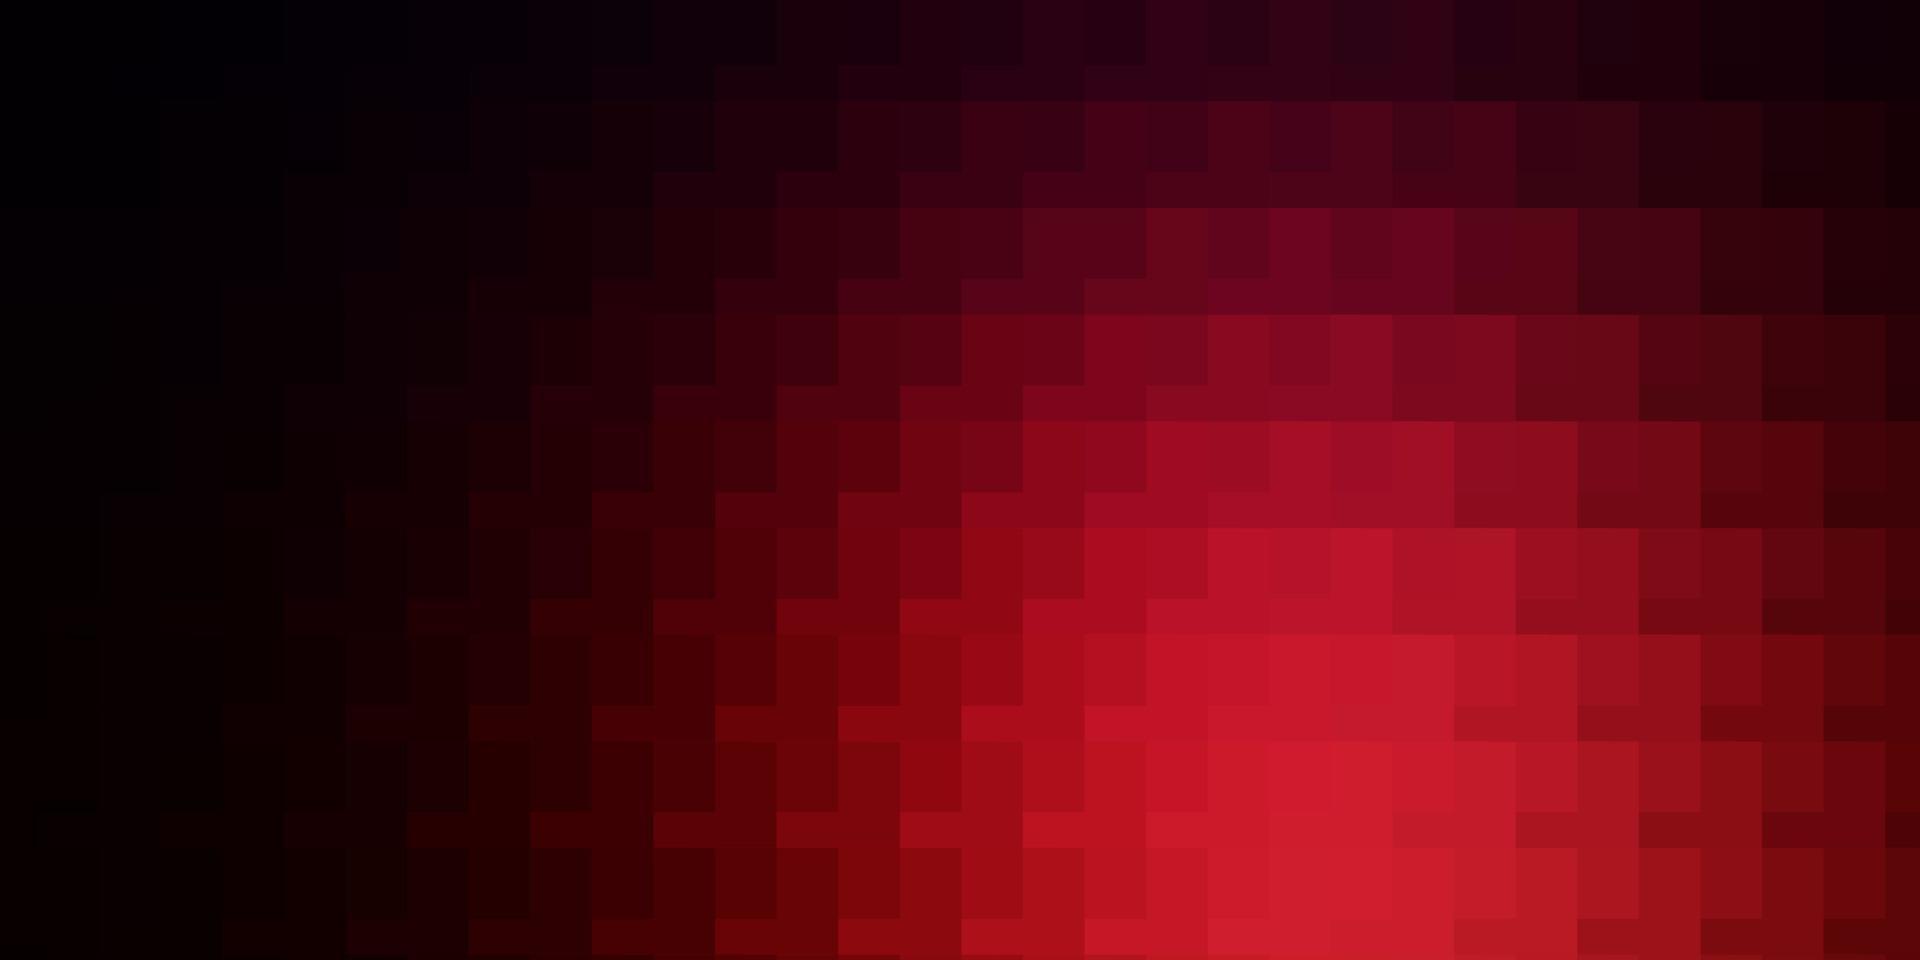 ljusblå, röd vektormall i rektanglar. vektor